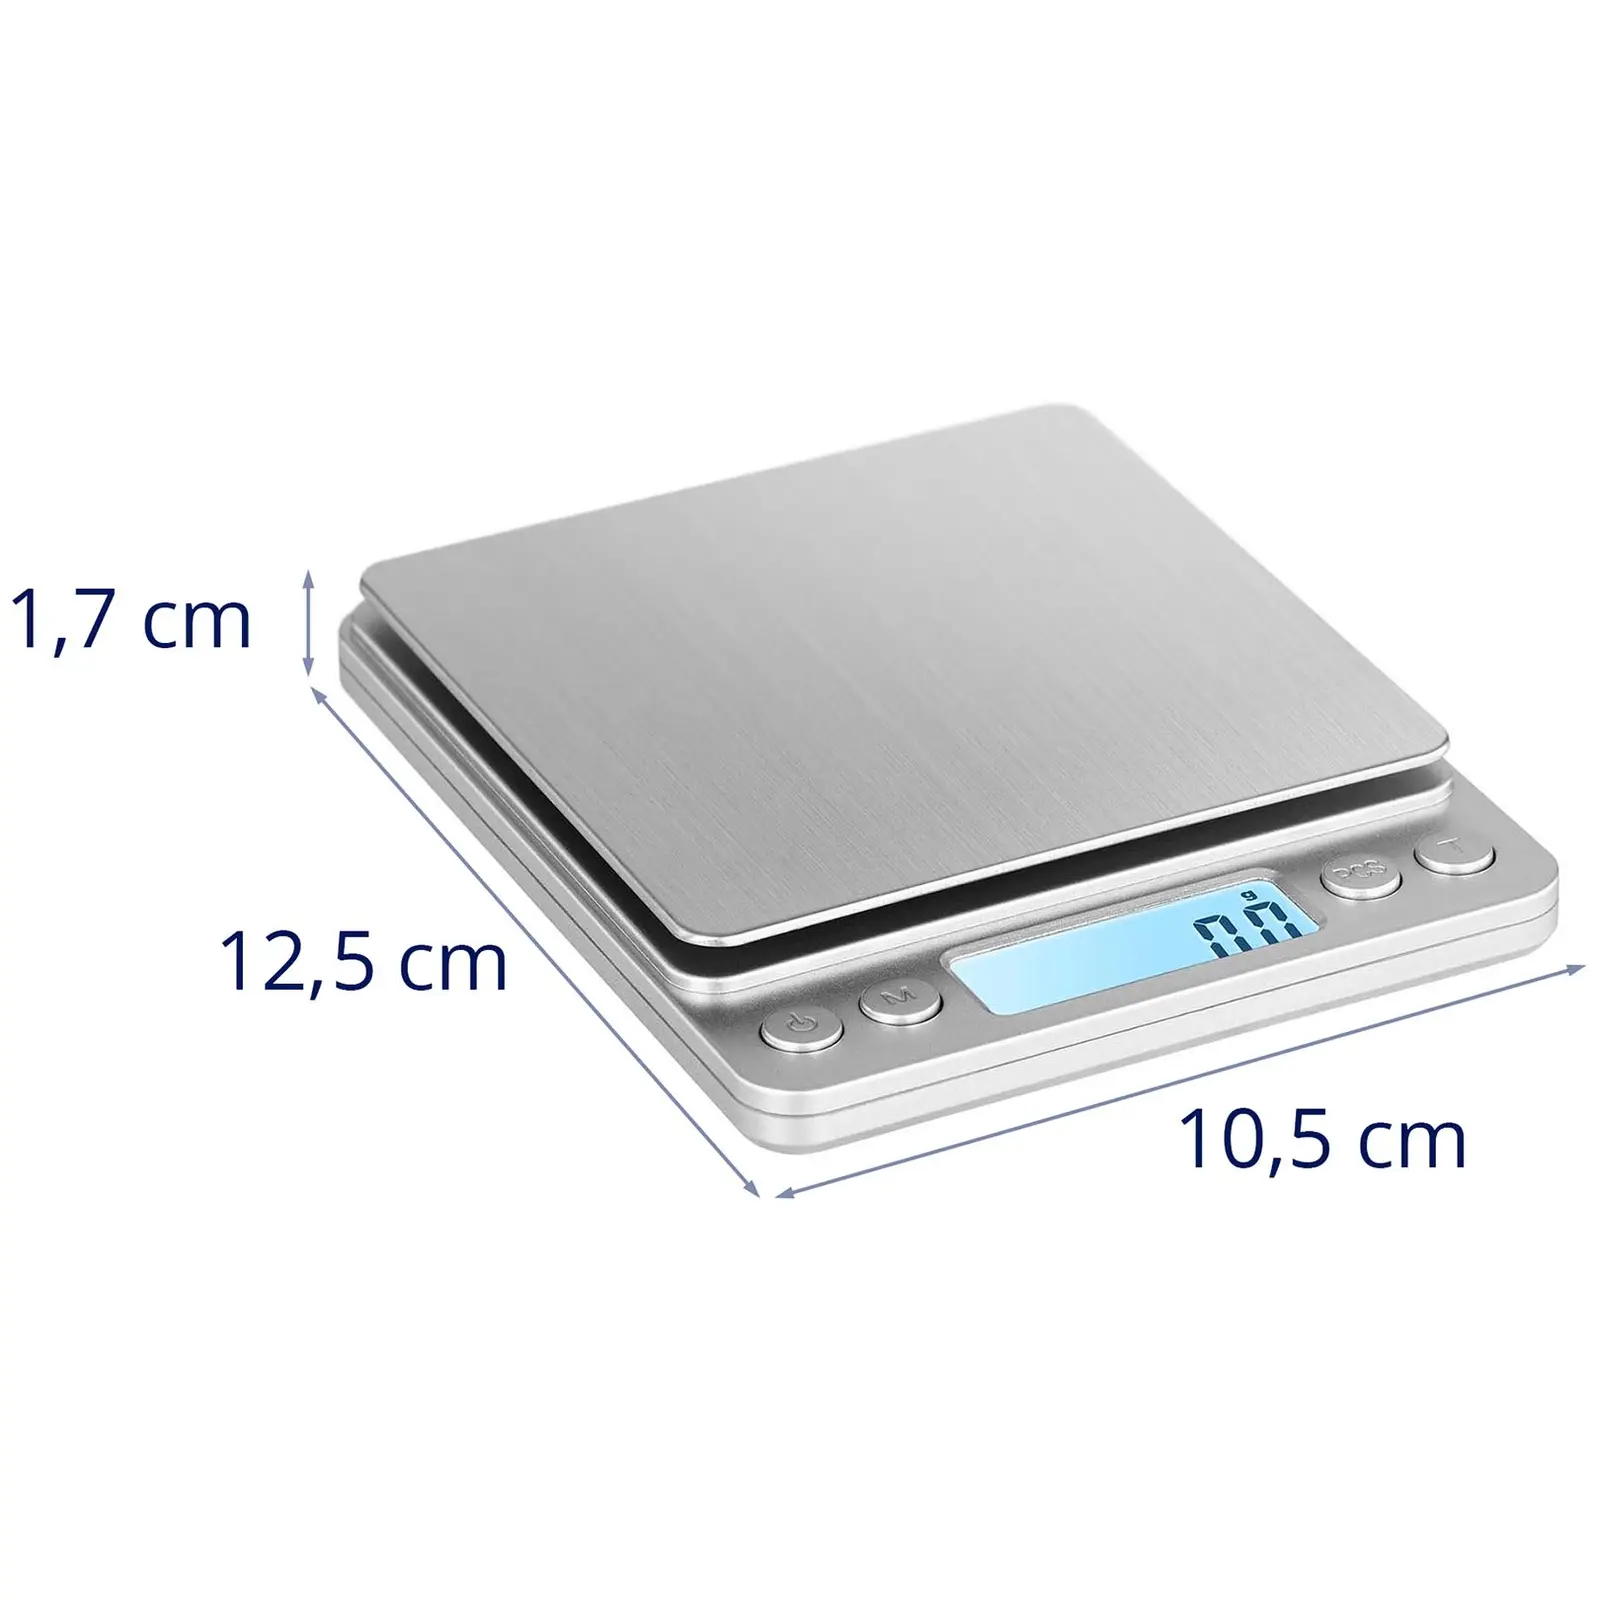 Balanza de mesa digital - 500 g / 0,01 g - 10 x 10 cm